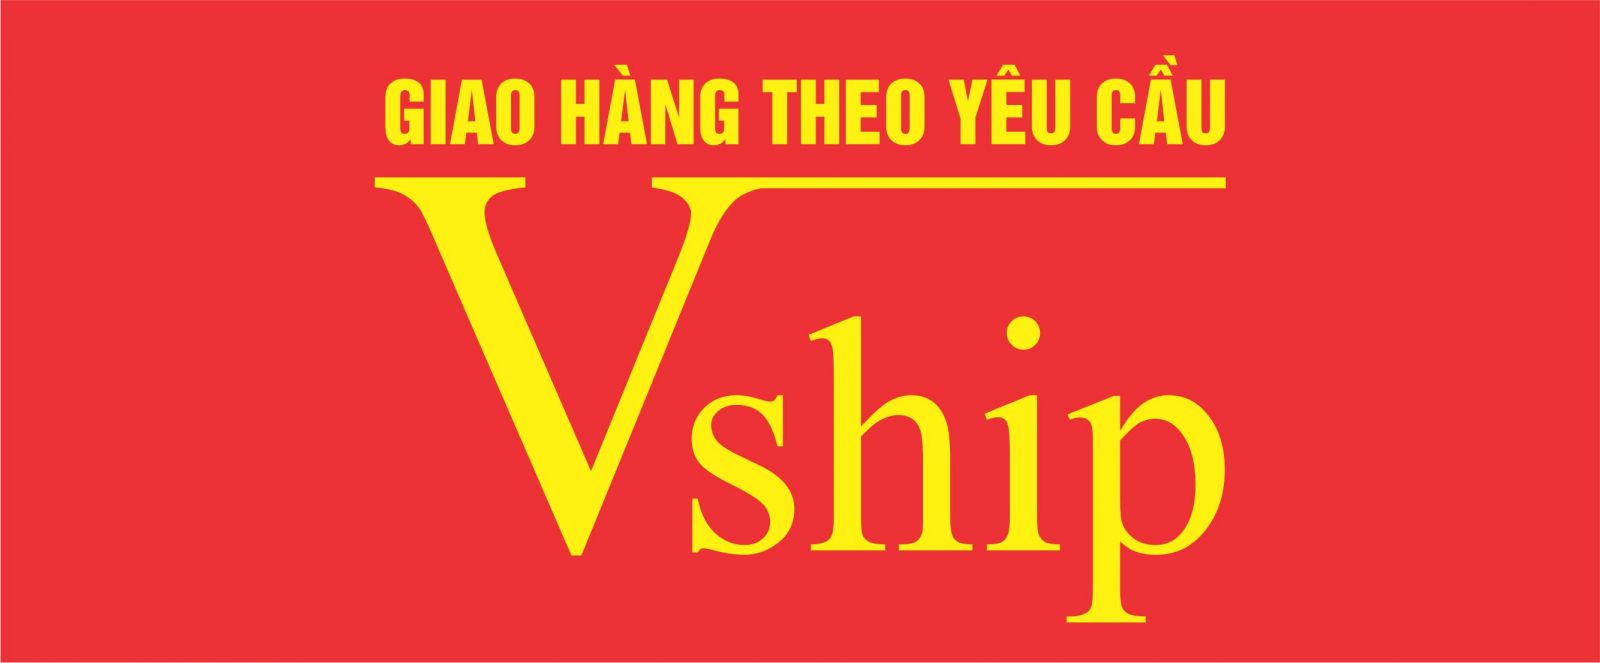 Thiết kế app giao hàng VShip tại Biên Hòa – Rubic Group